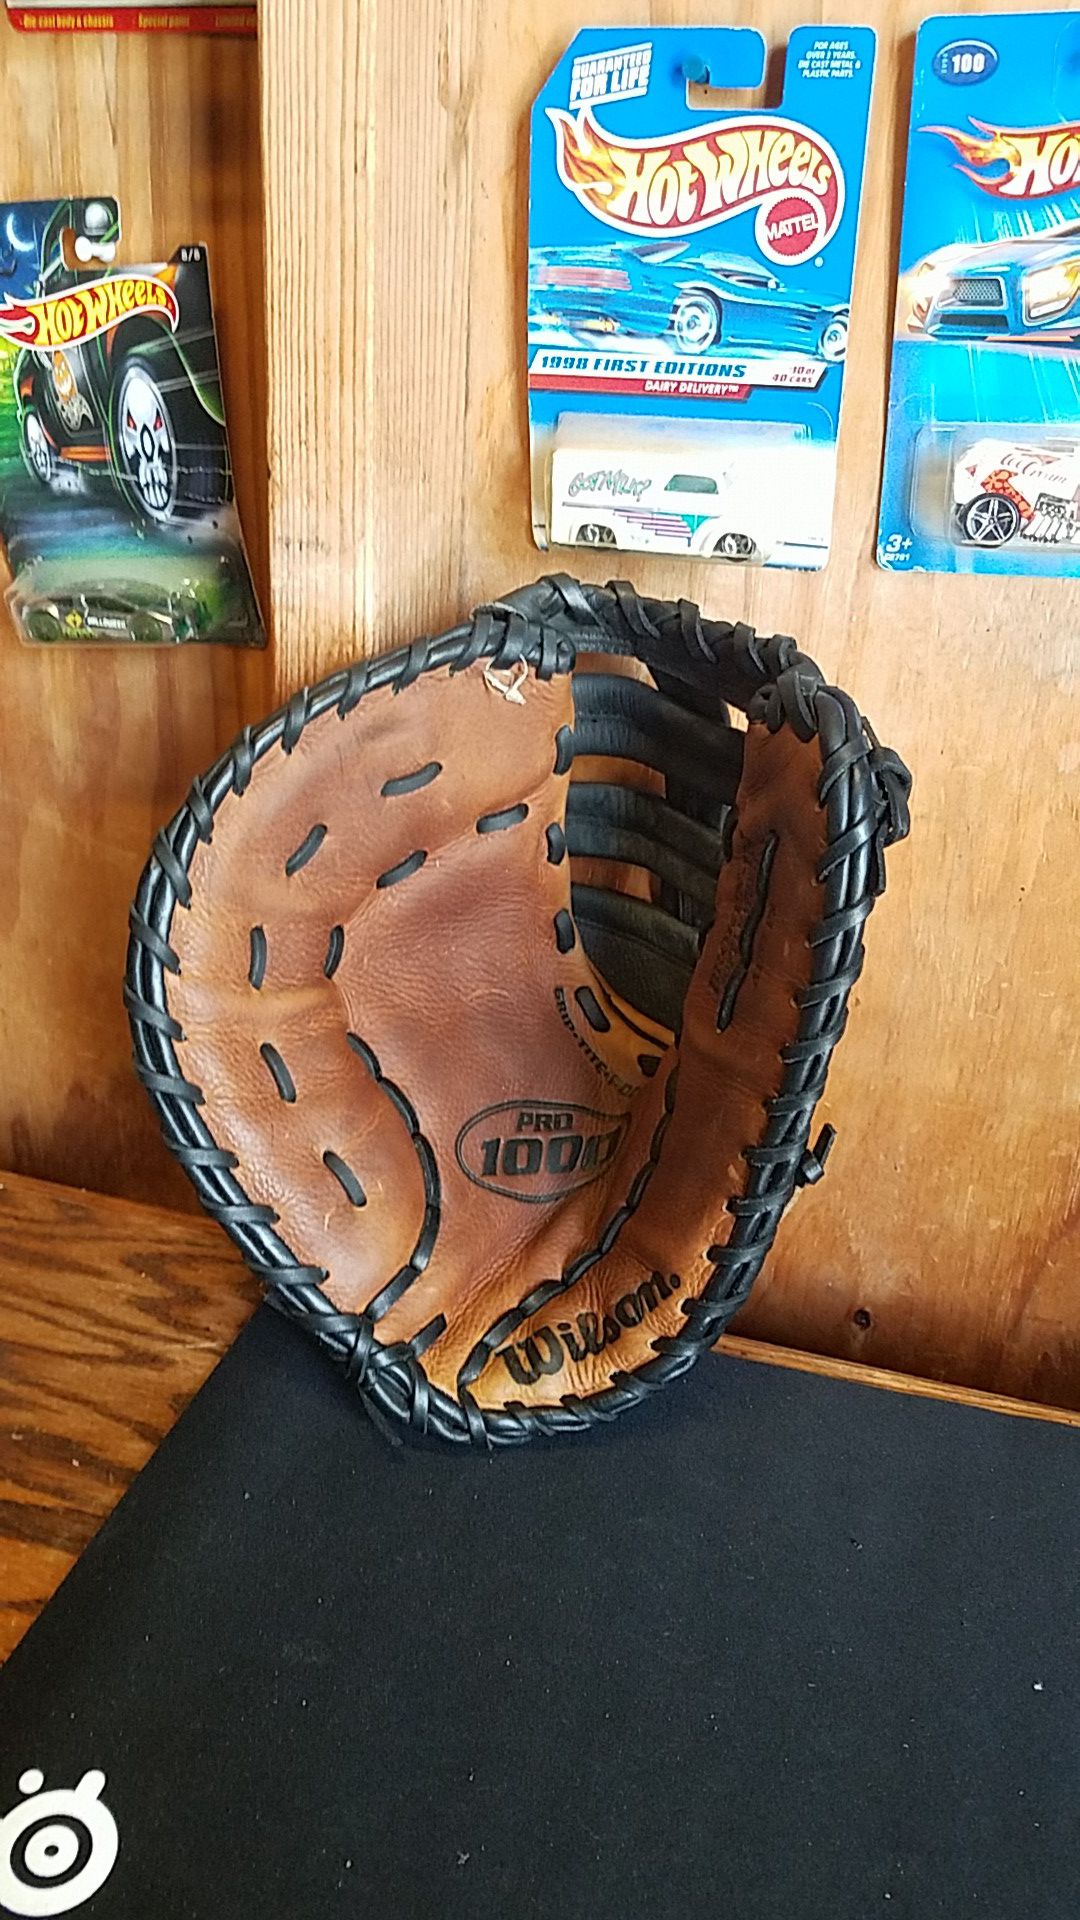 Wilson Pro 1000 first base glove, 12"